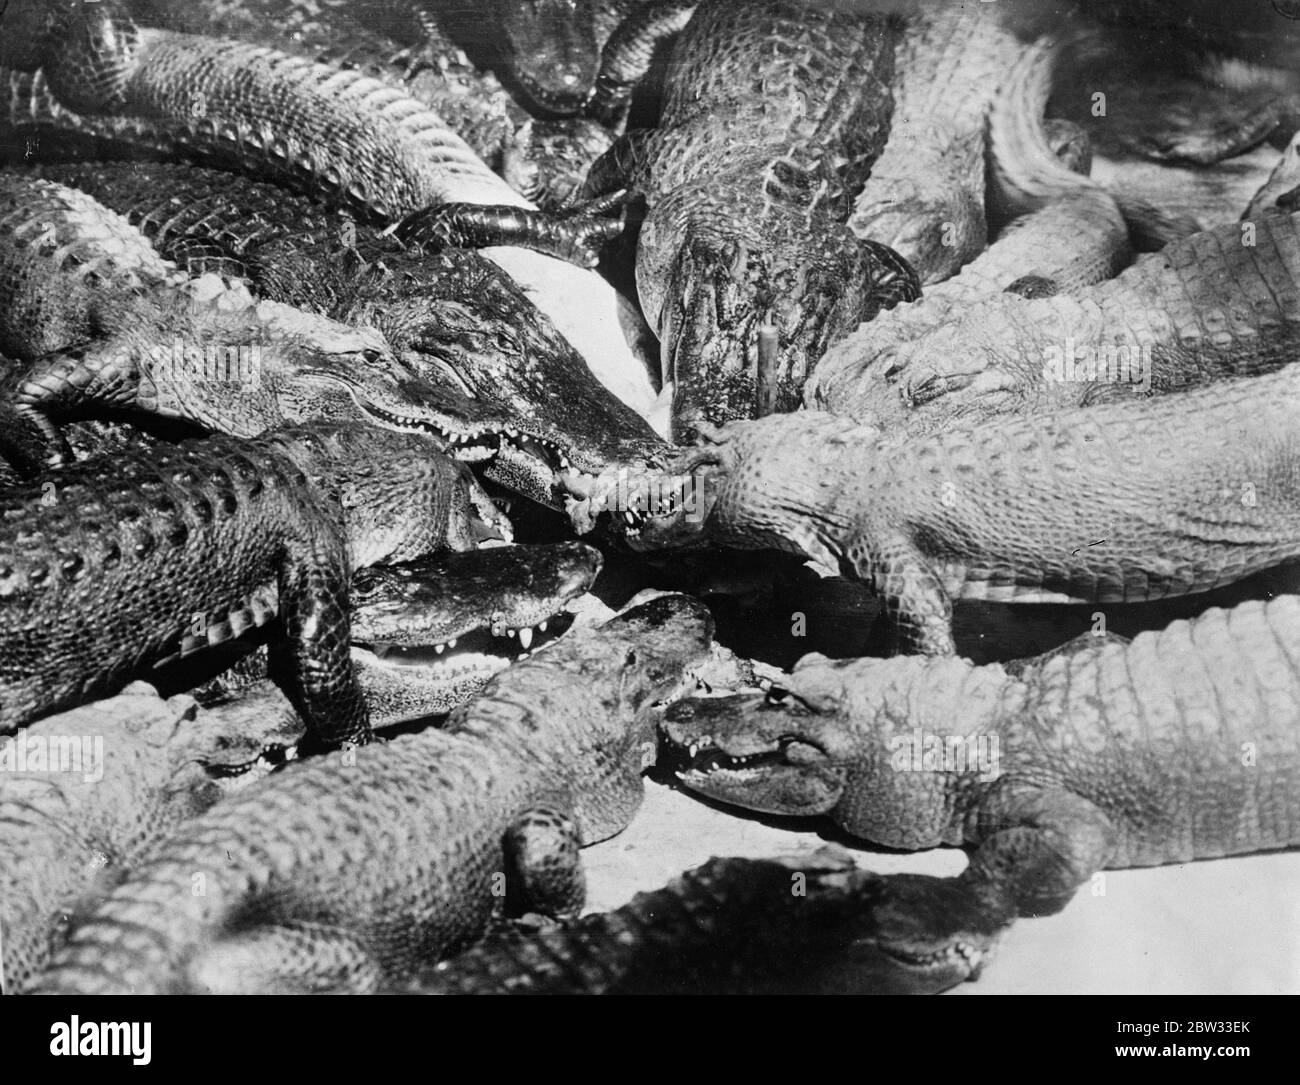 Erwachen aus ihrem langen Winterschlaf und bereit für eine gute Mahlzeit. Alligatoren auf einer Farm in Los Angeles, in Übereinstimmung mit dem Brauch ihrer specise, haben Bee dormunt während der langen Wintermonate, Aufwachen aus ihrem langen Schlaf und bereit für eine gute Mahlzeit, um den Frühling begrüßen. . 15 April 1932 . Stockfoto